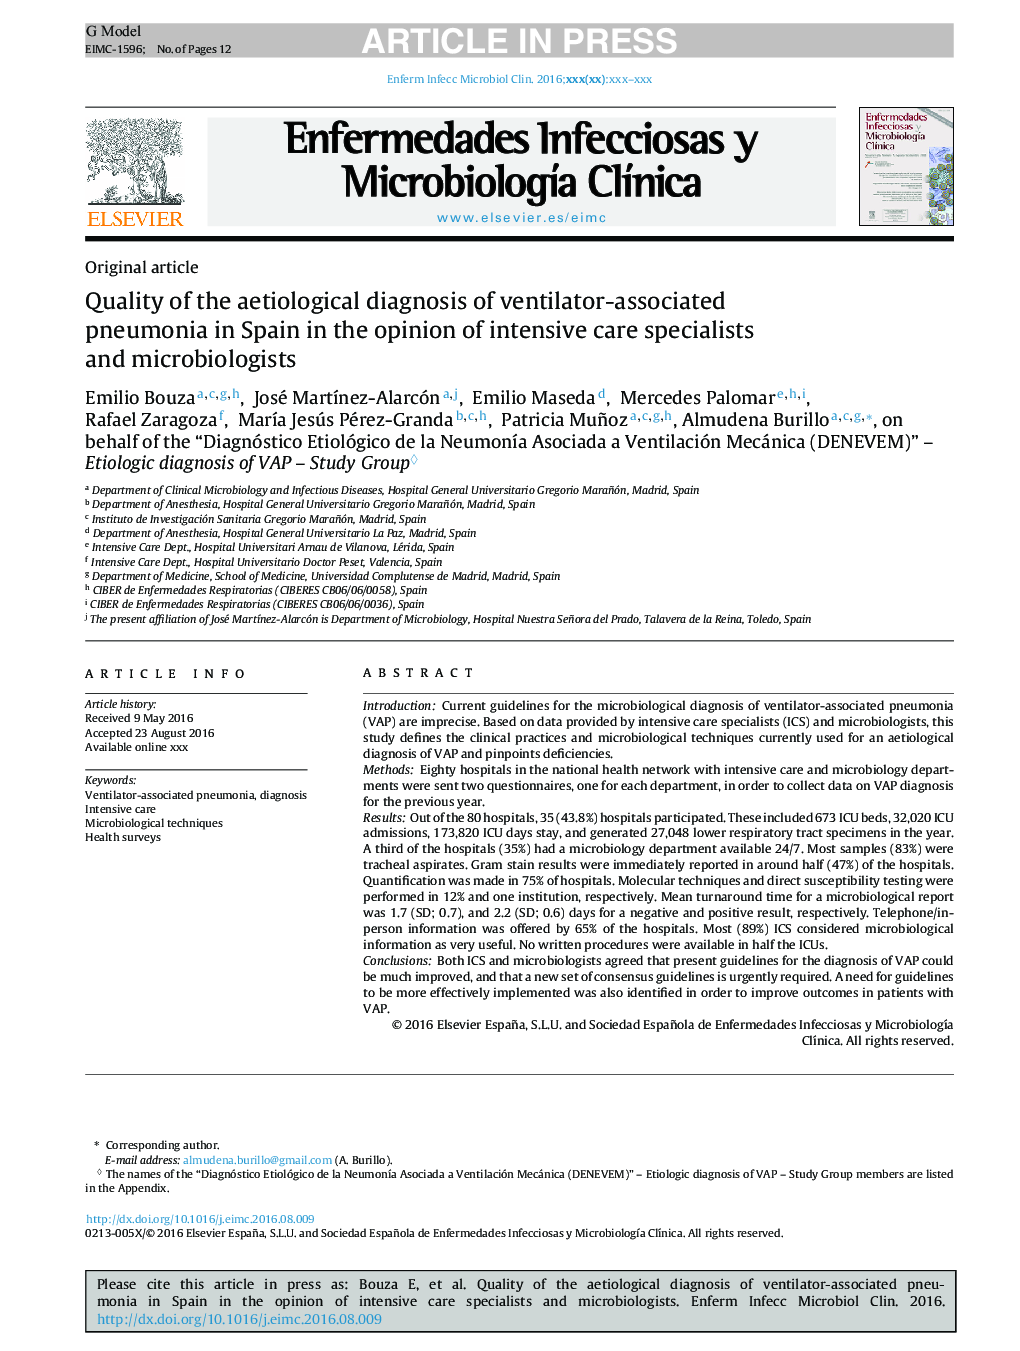 کیفیت تشخیص زودهنگام پنومونی مرتبط با تهویه در اسپانیا به نظر متخصصان مراقبت های ویژه و میکروبشناسی ها 